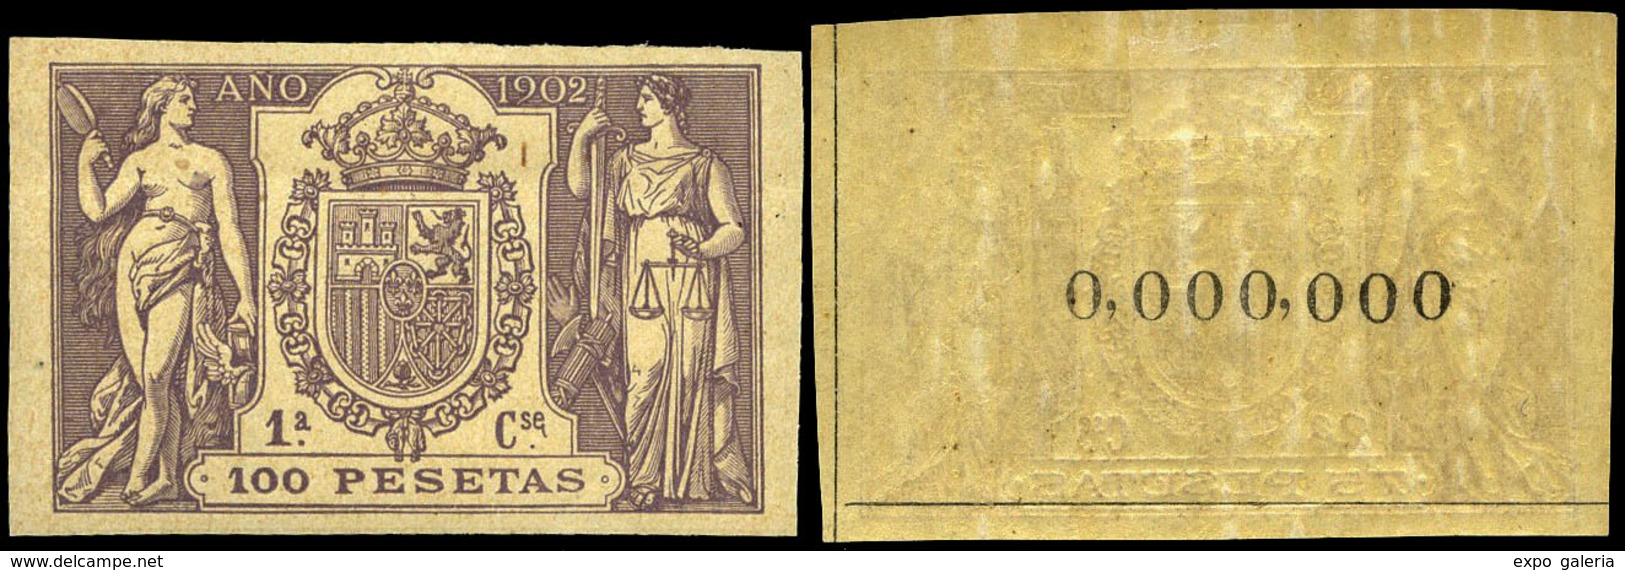 Alemany 499/509 - 1902. Pólizas. 11 Valores. Serie Completa Con Numeración 000.000 Al Dorso. Goma Original - Fiscales